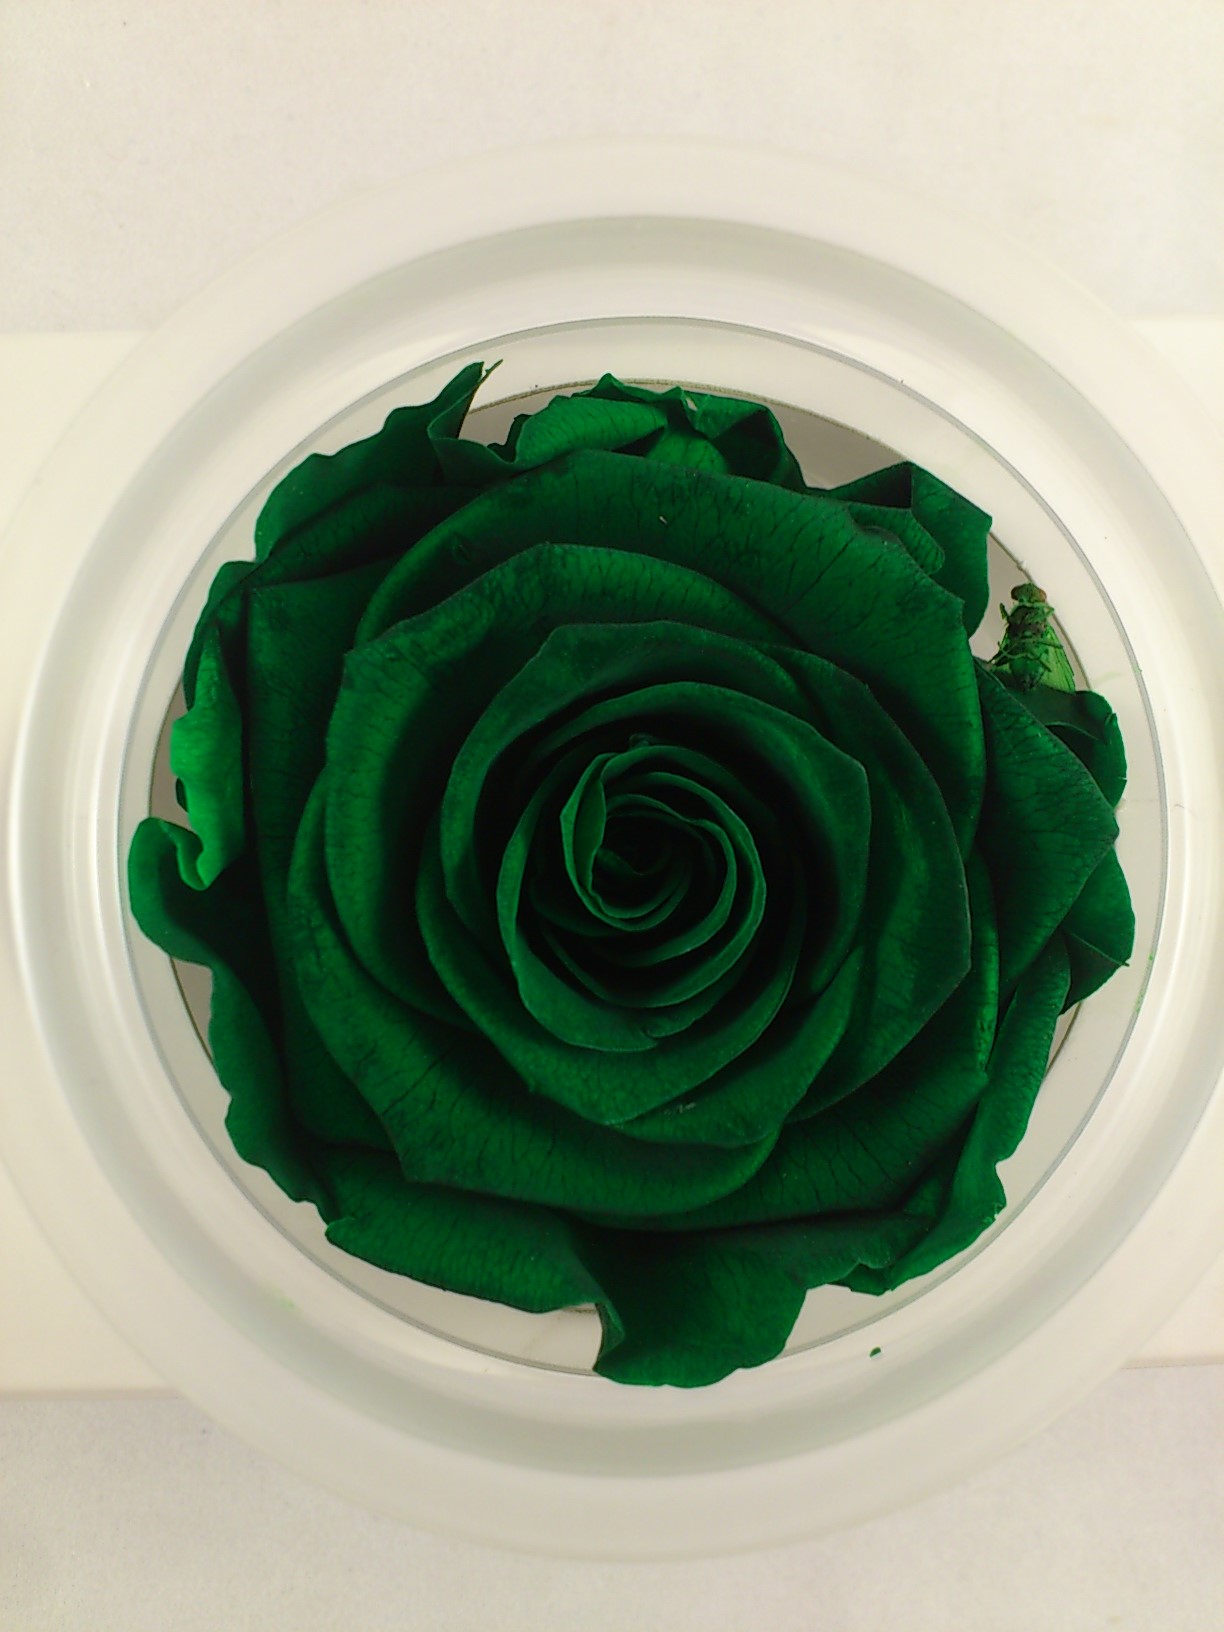 Geconserveerde roos XL Ø 6-6.5 cm emerald green